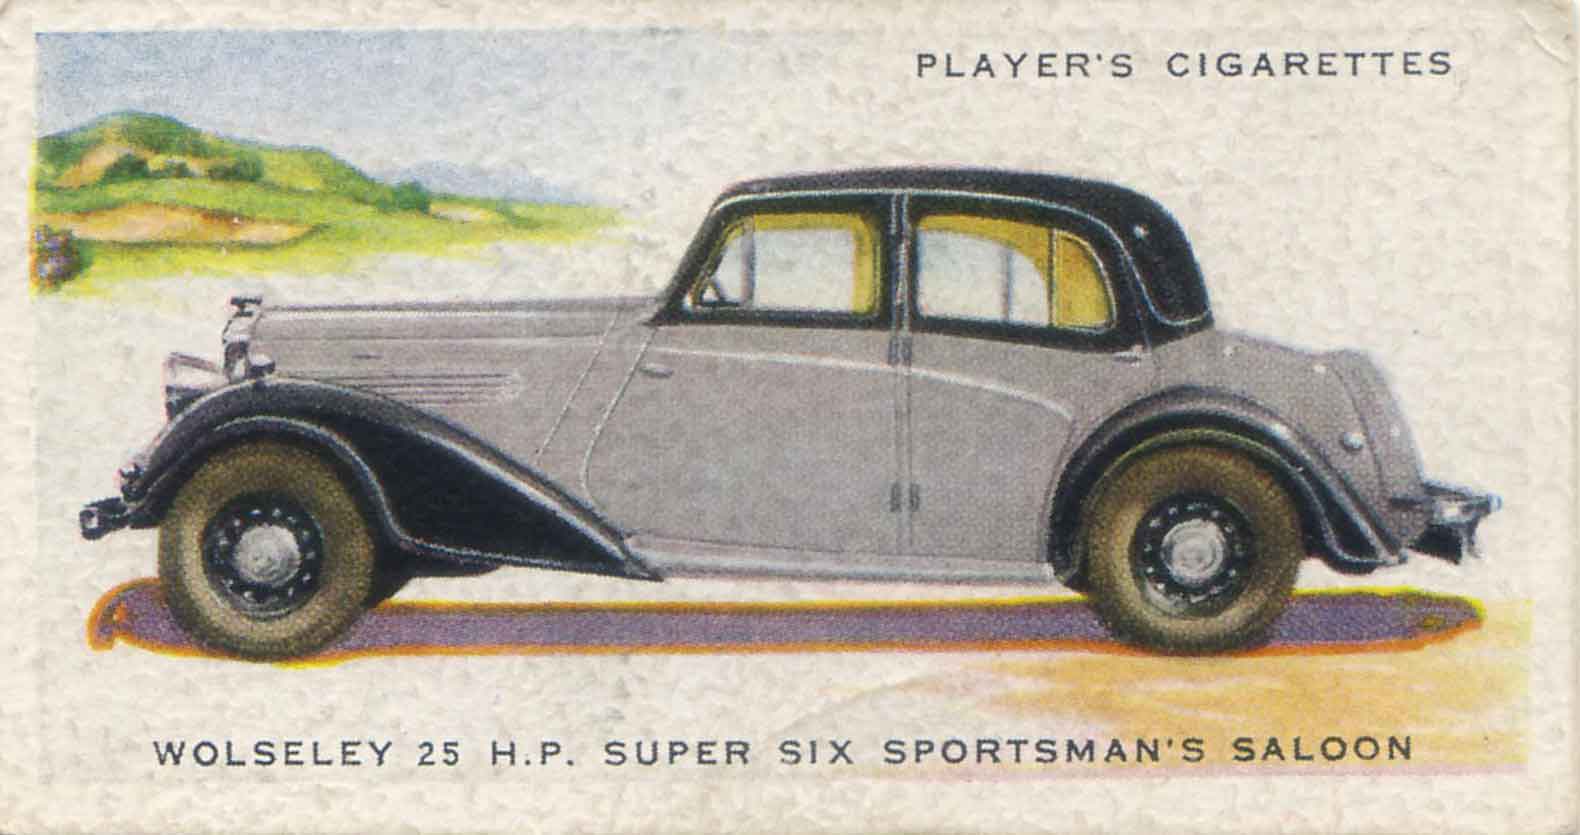 Wolseley Six Sportsman's Saloon. 1937 cigarette card.